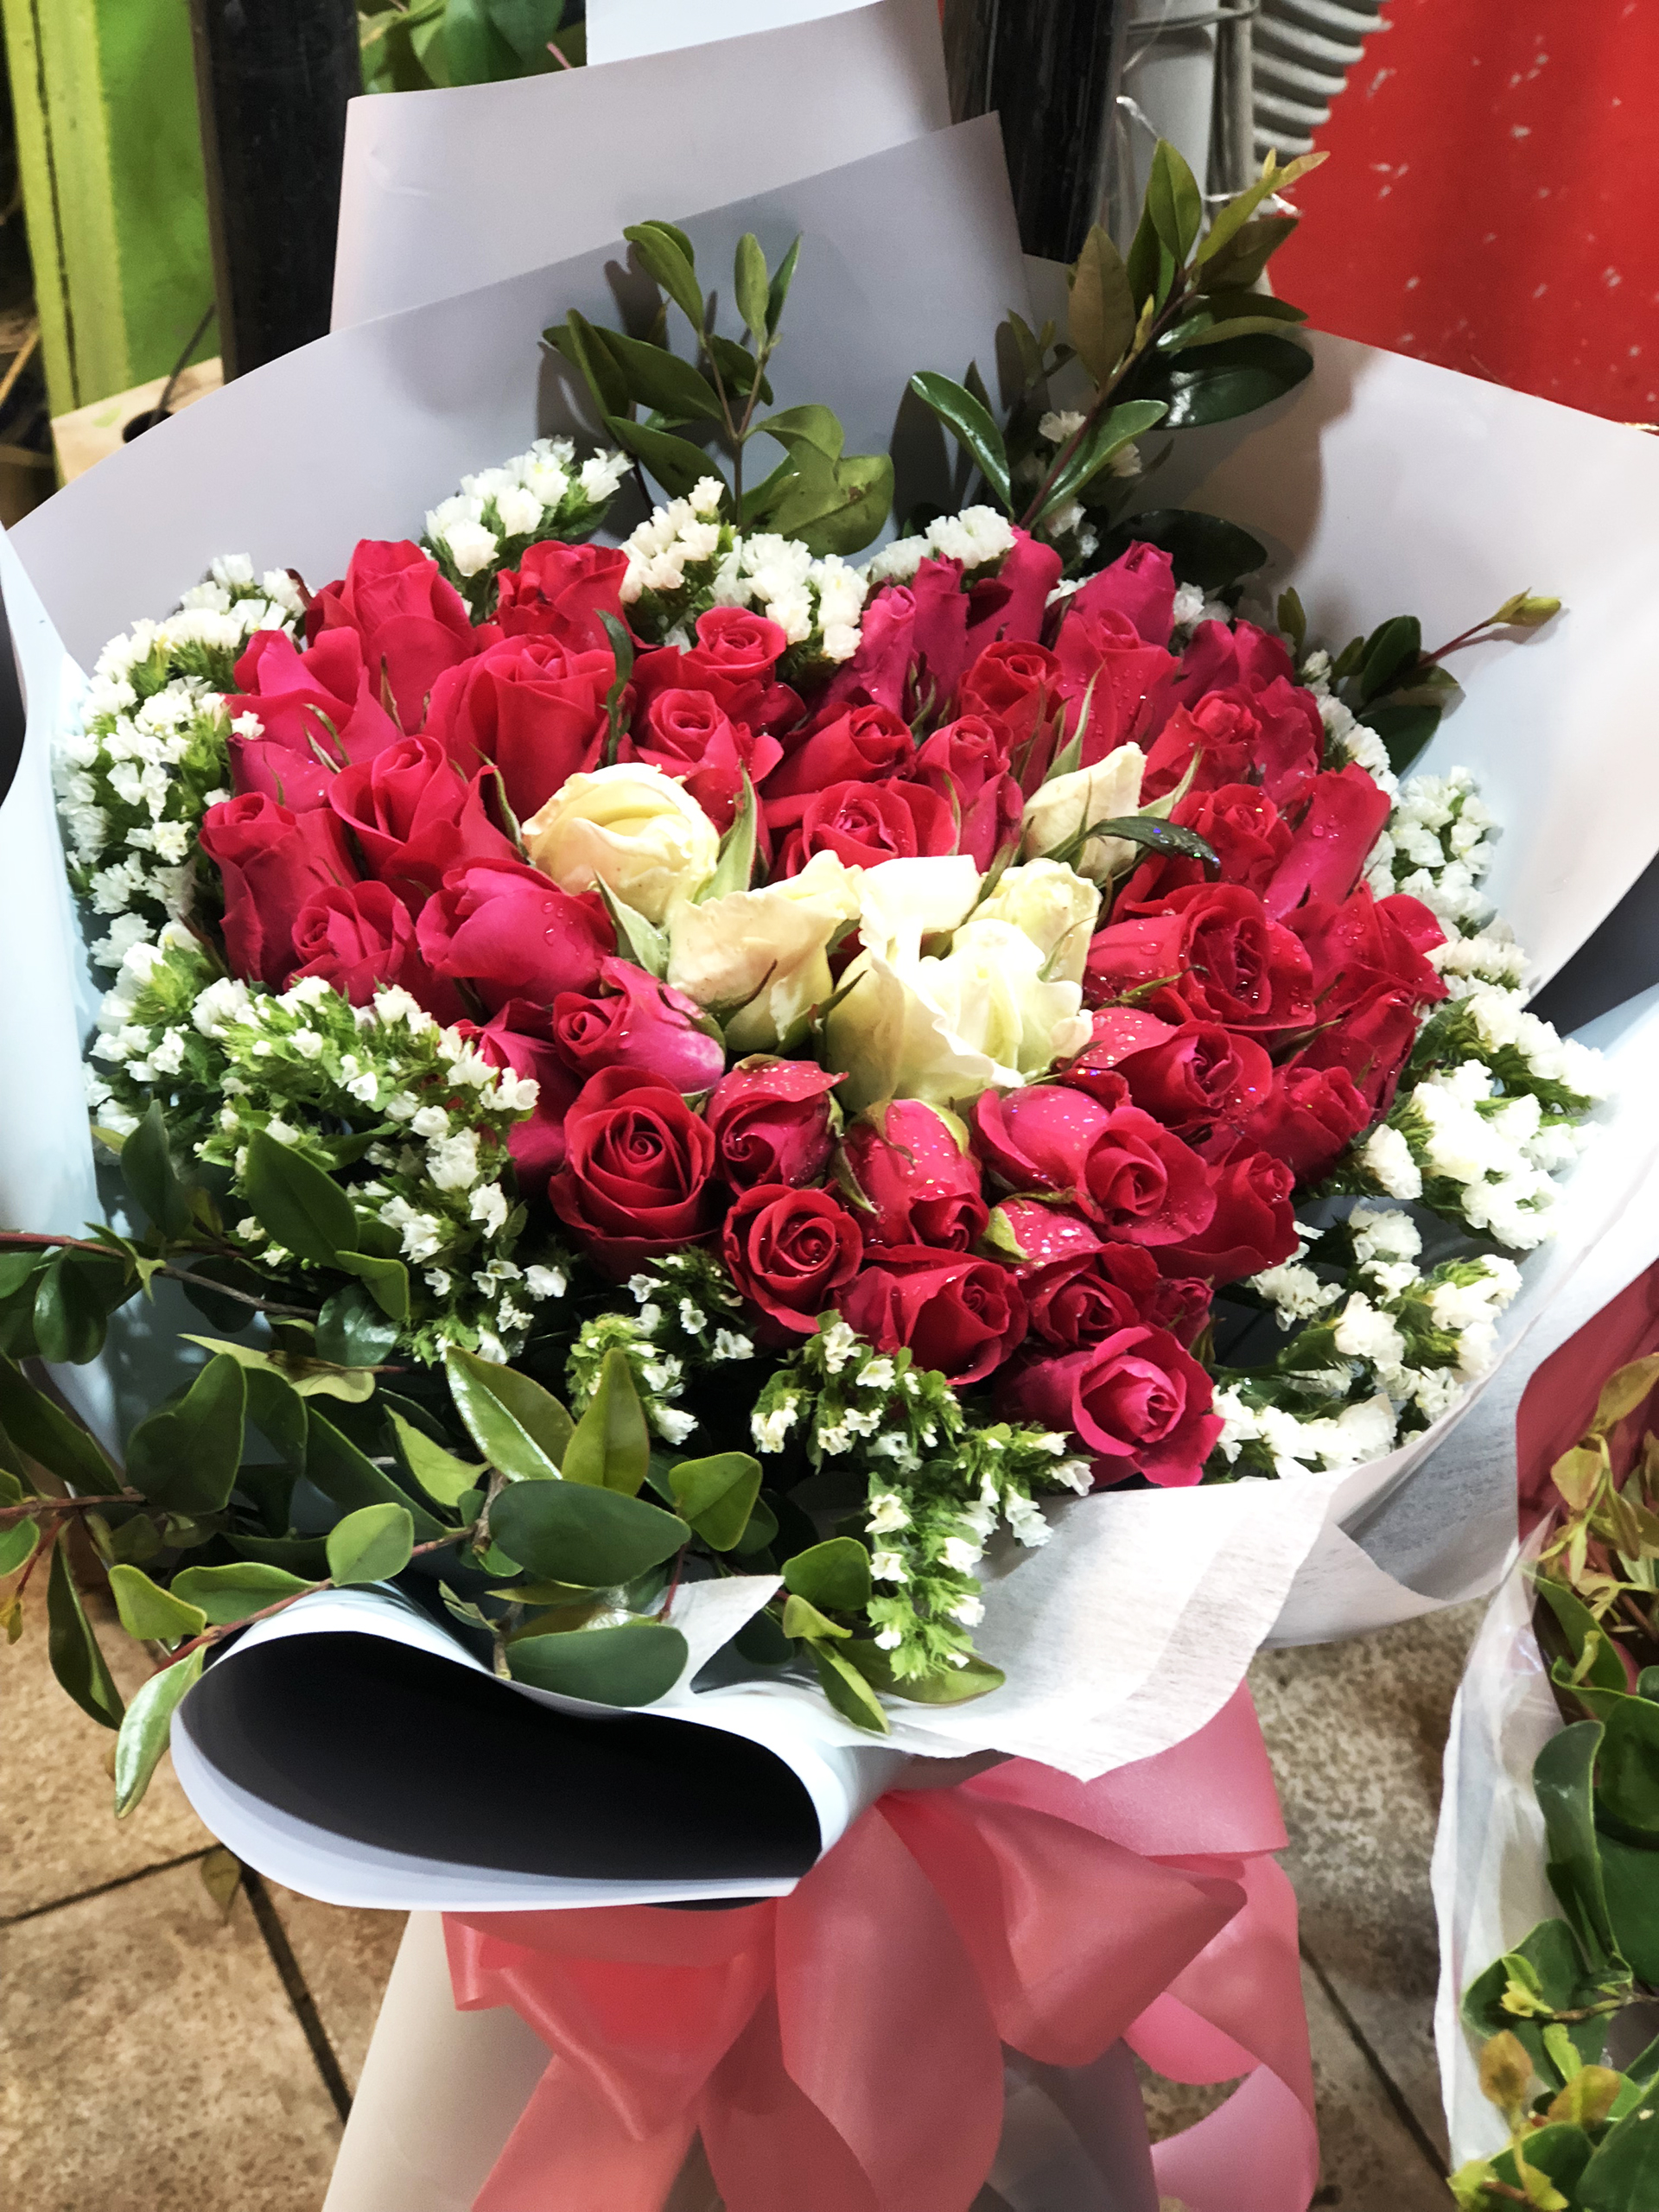 Hãy tặng cho bạn gái của mình một bó hoa Valentine tuyệt đẹp và đầy ý nghĩa trong dịp lễ tình yêu sắp tới. Dưới đây là những mẫu hoa được chọn lọc, chắc chắn sẽ khiến cô nàng vô cùng hạnh phúc và tràn đầy ngọt ngào!